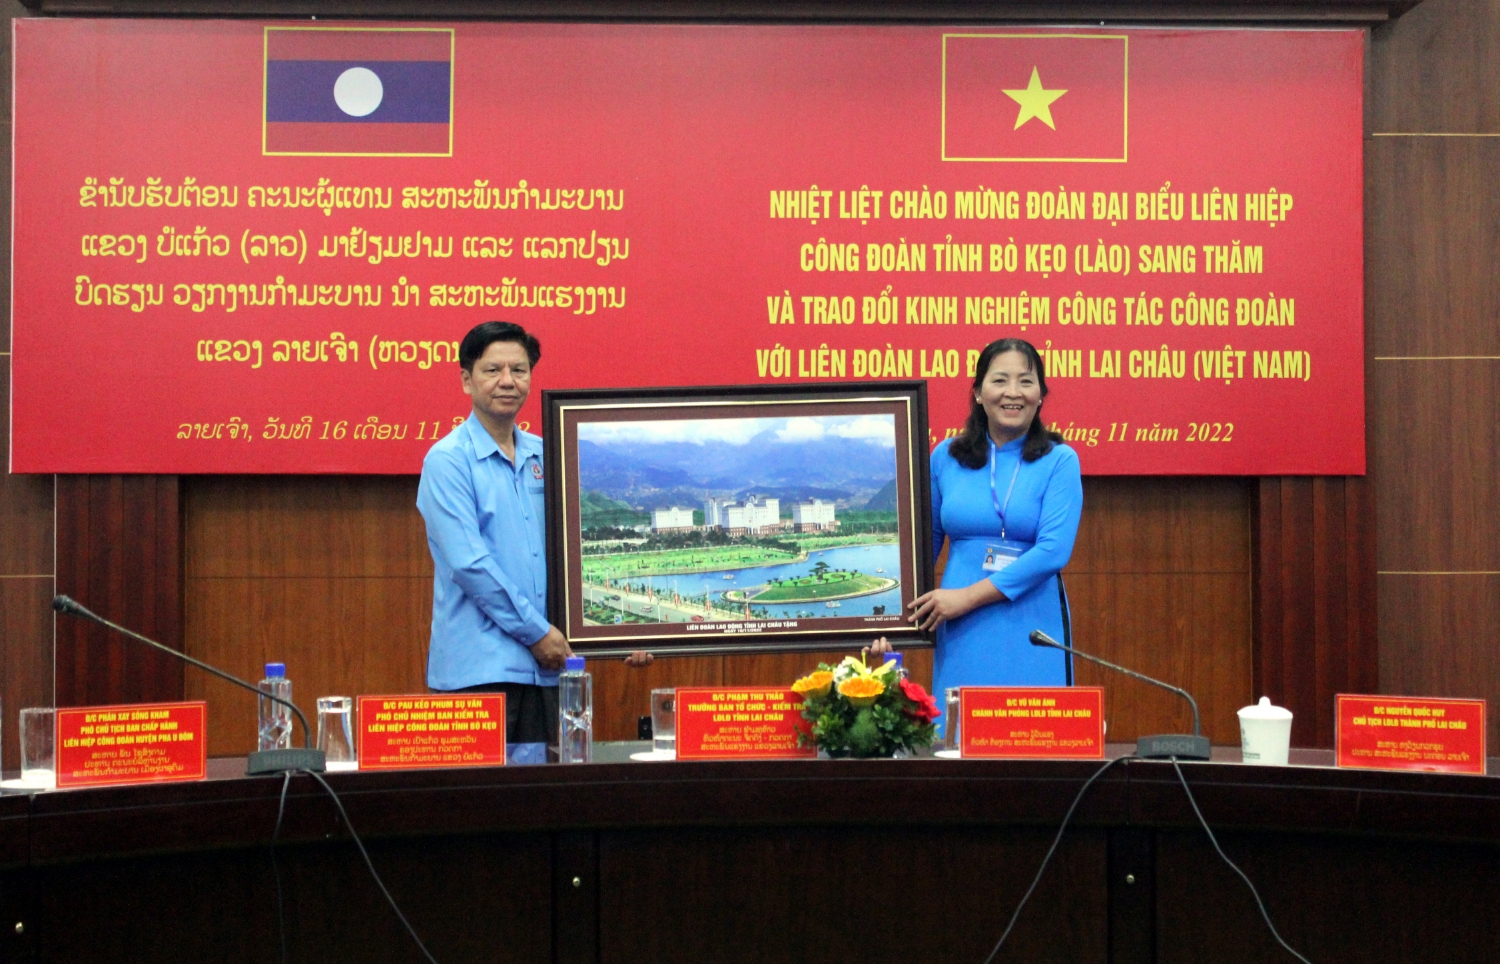 Lãnh đạo LĐLĐ tỉnh Lai Châu tặng bức tranh phong cảnh thành phố Lai Châu cho đồng chí Sụ Thịt Mịt Săm Phăn - Chủ tịch Liên hiệp Công đoàn tỉnh Bò Kẹo